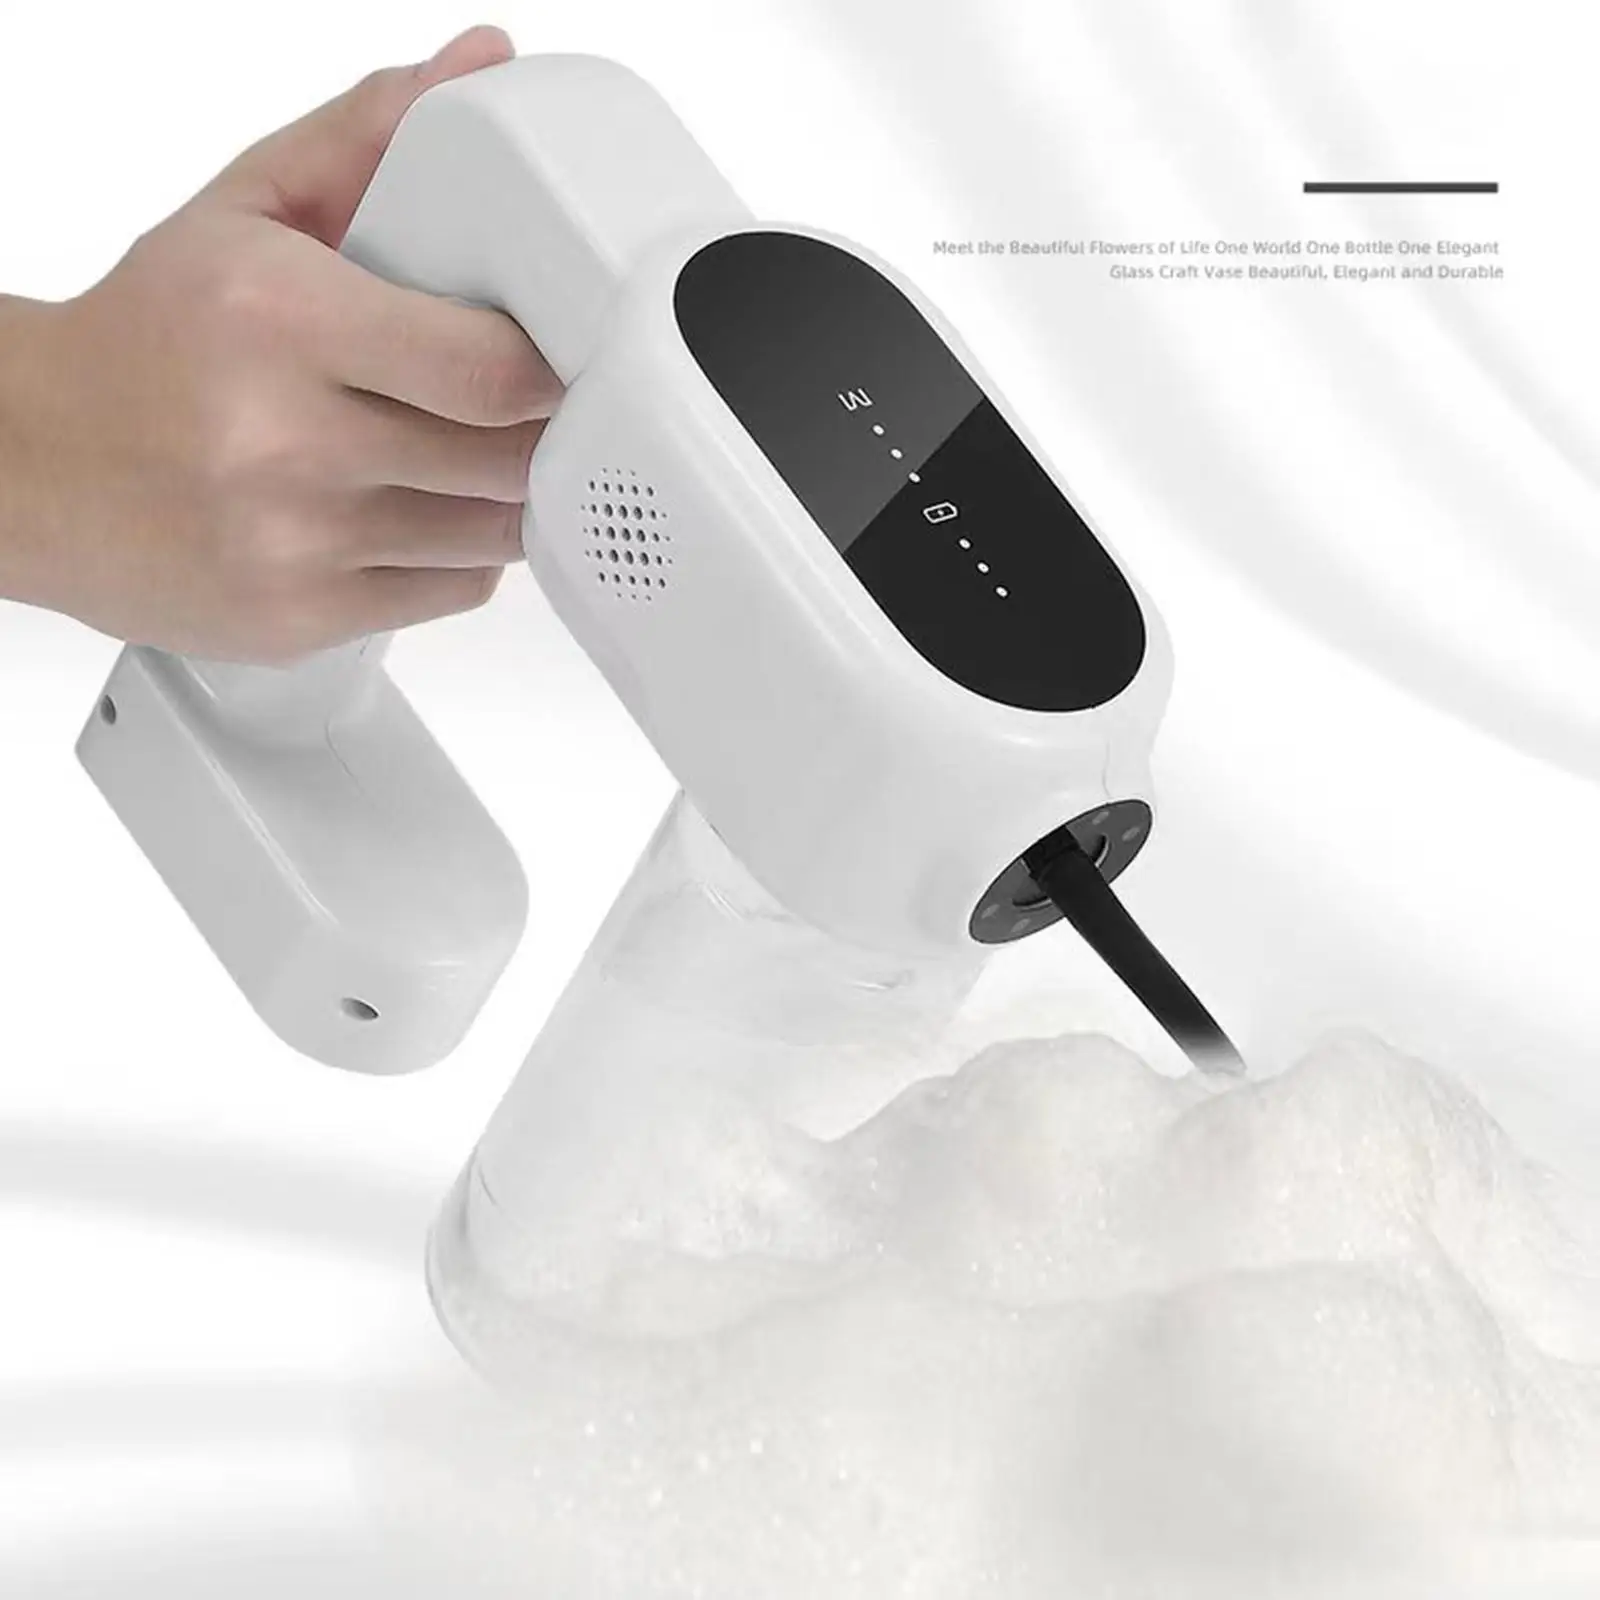 Electric Shampoo Foamer Dispenser with 300ml Water Bottle Bathing Foamer for Salon